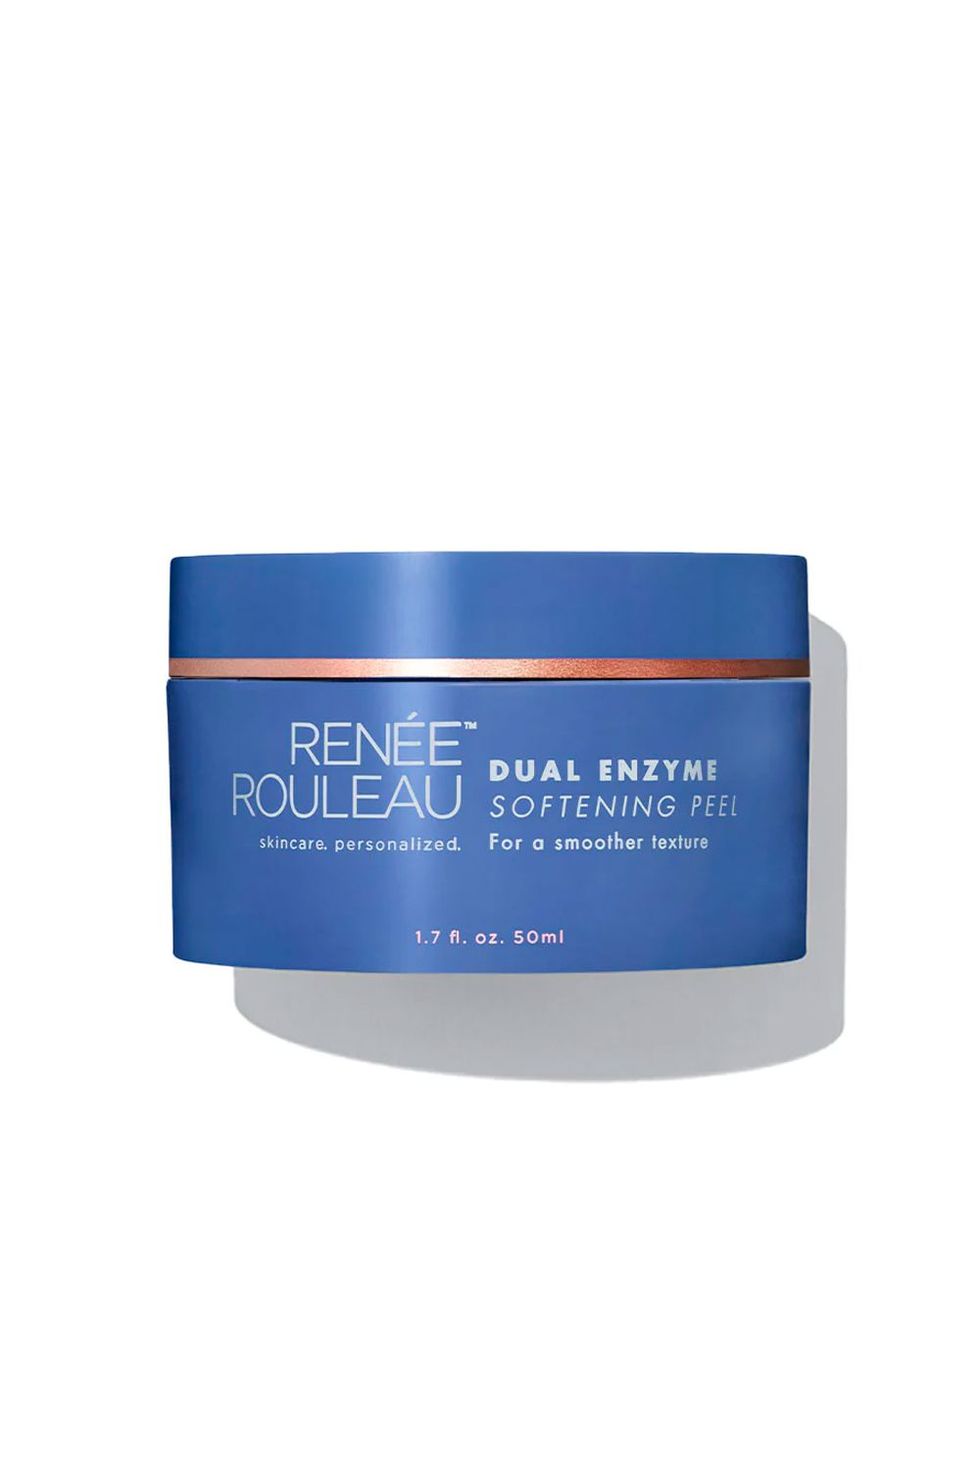 Renee Rouleau Dual Enzyme Softening Peel